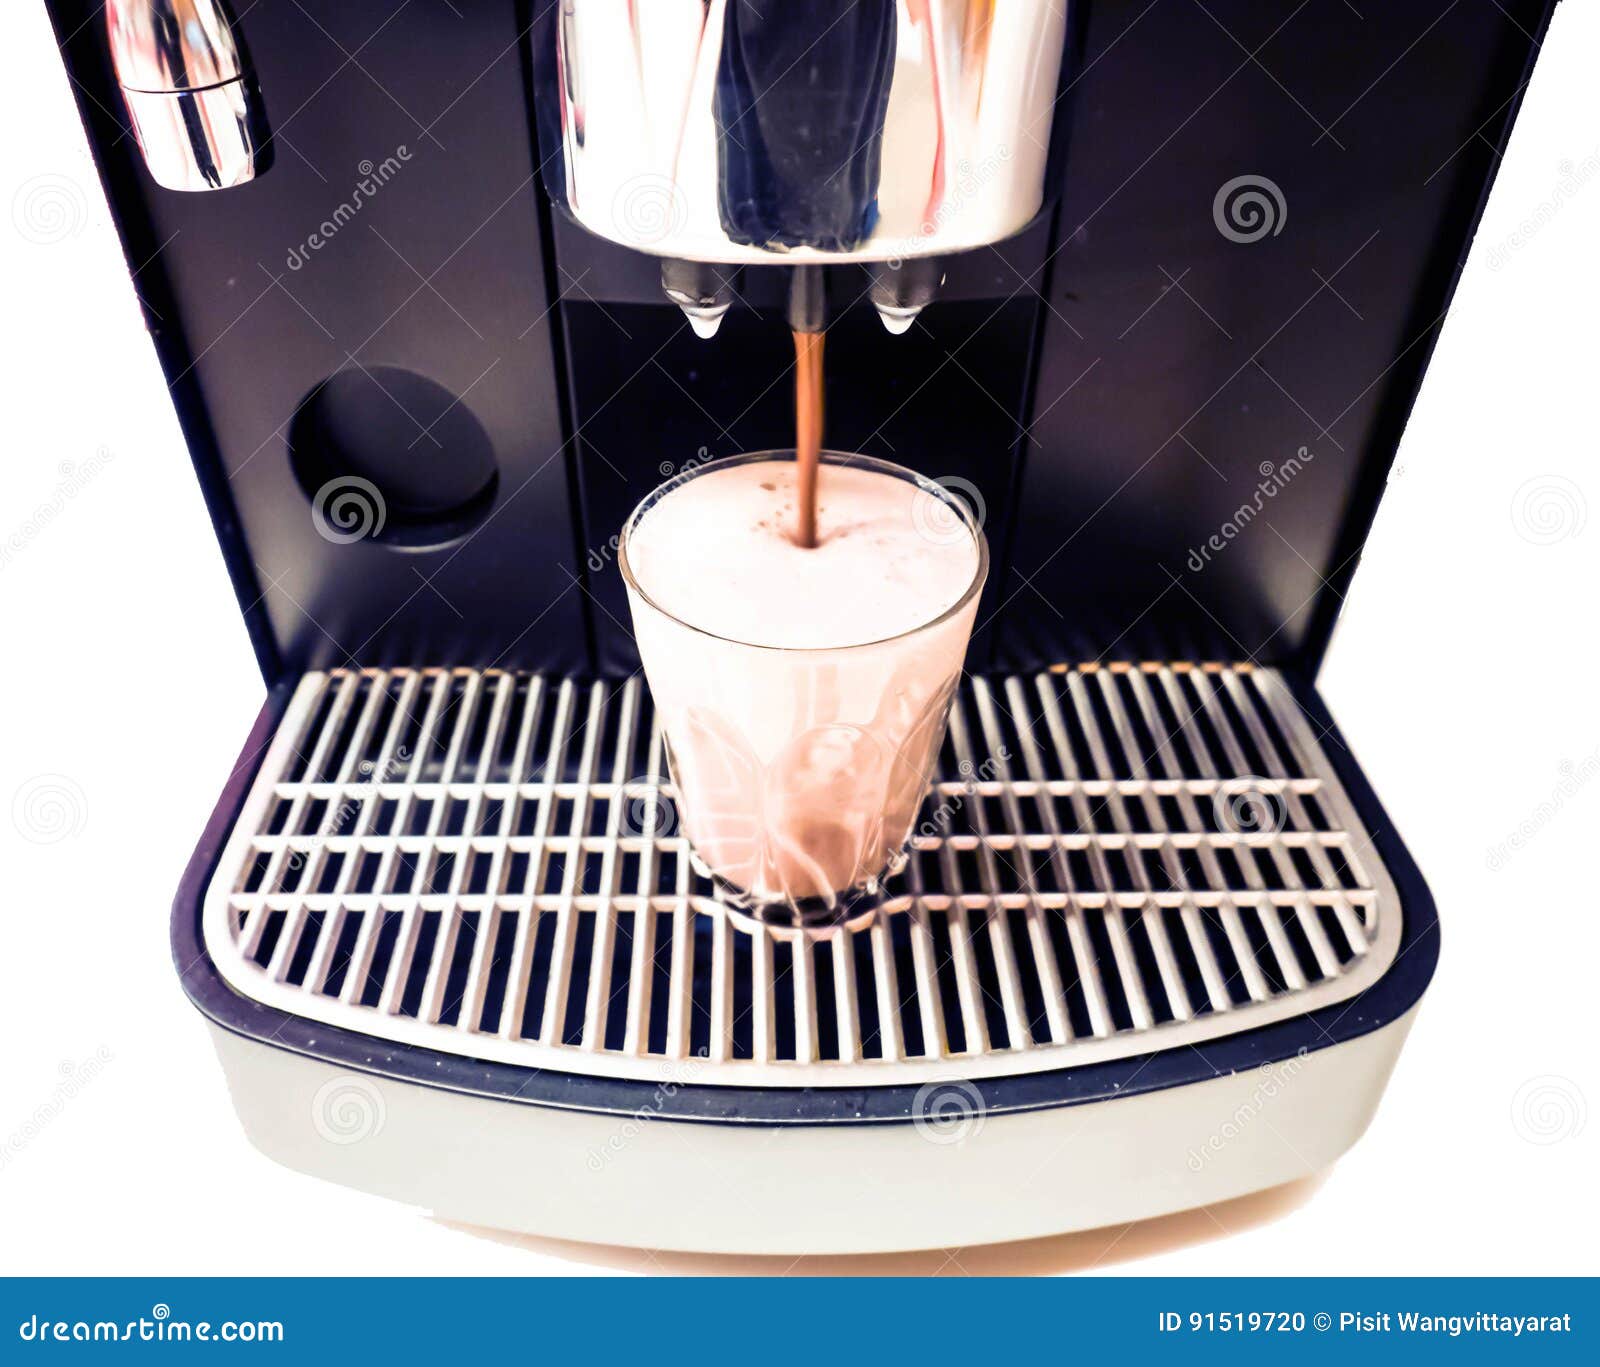 Hot Beverage machines